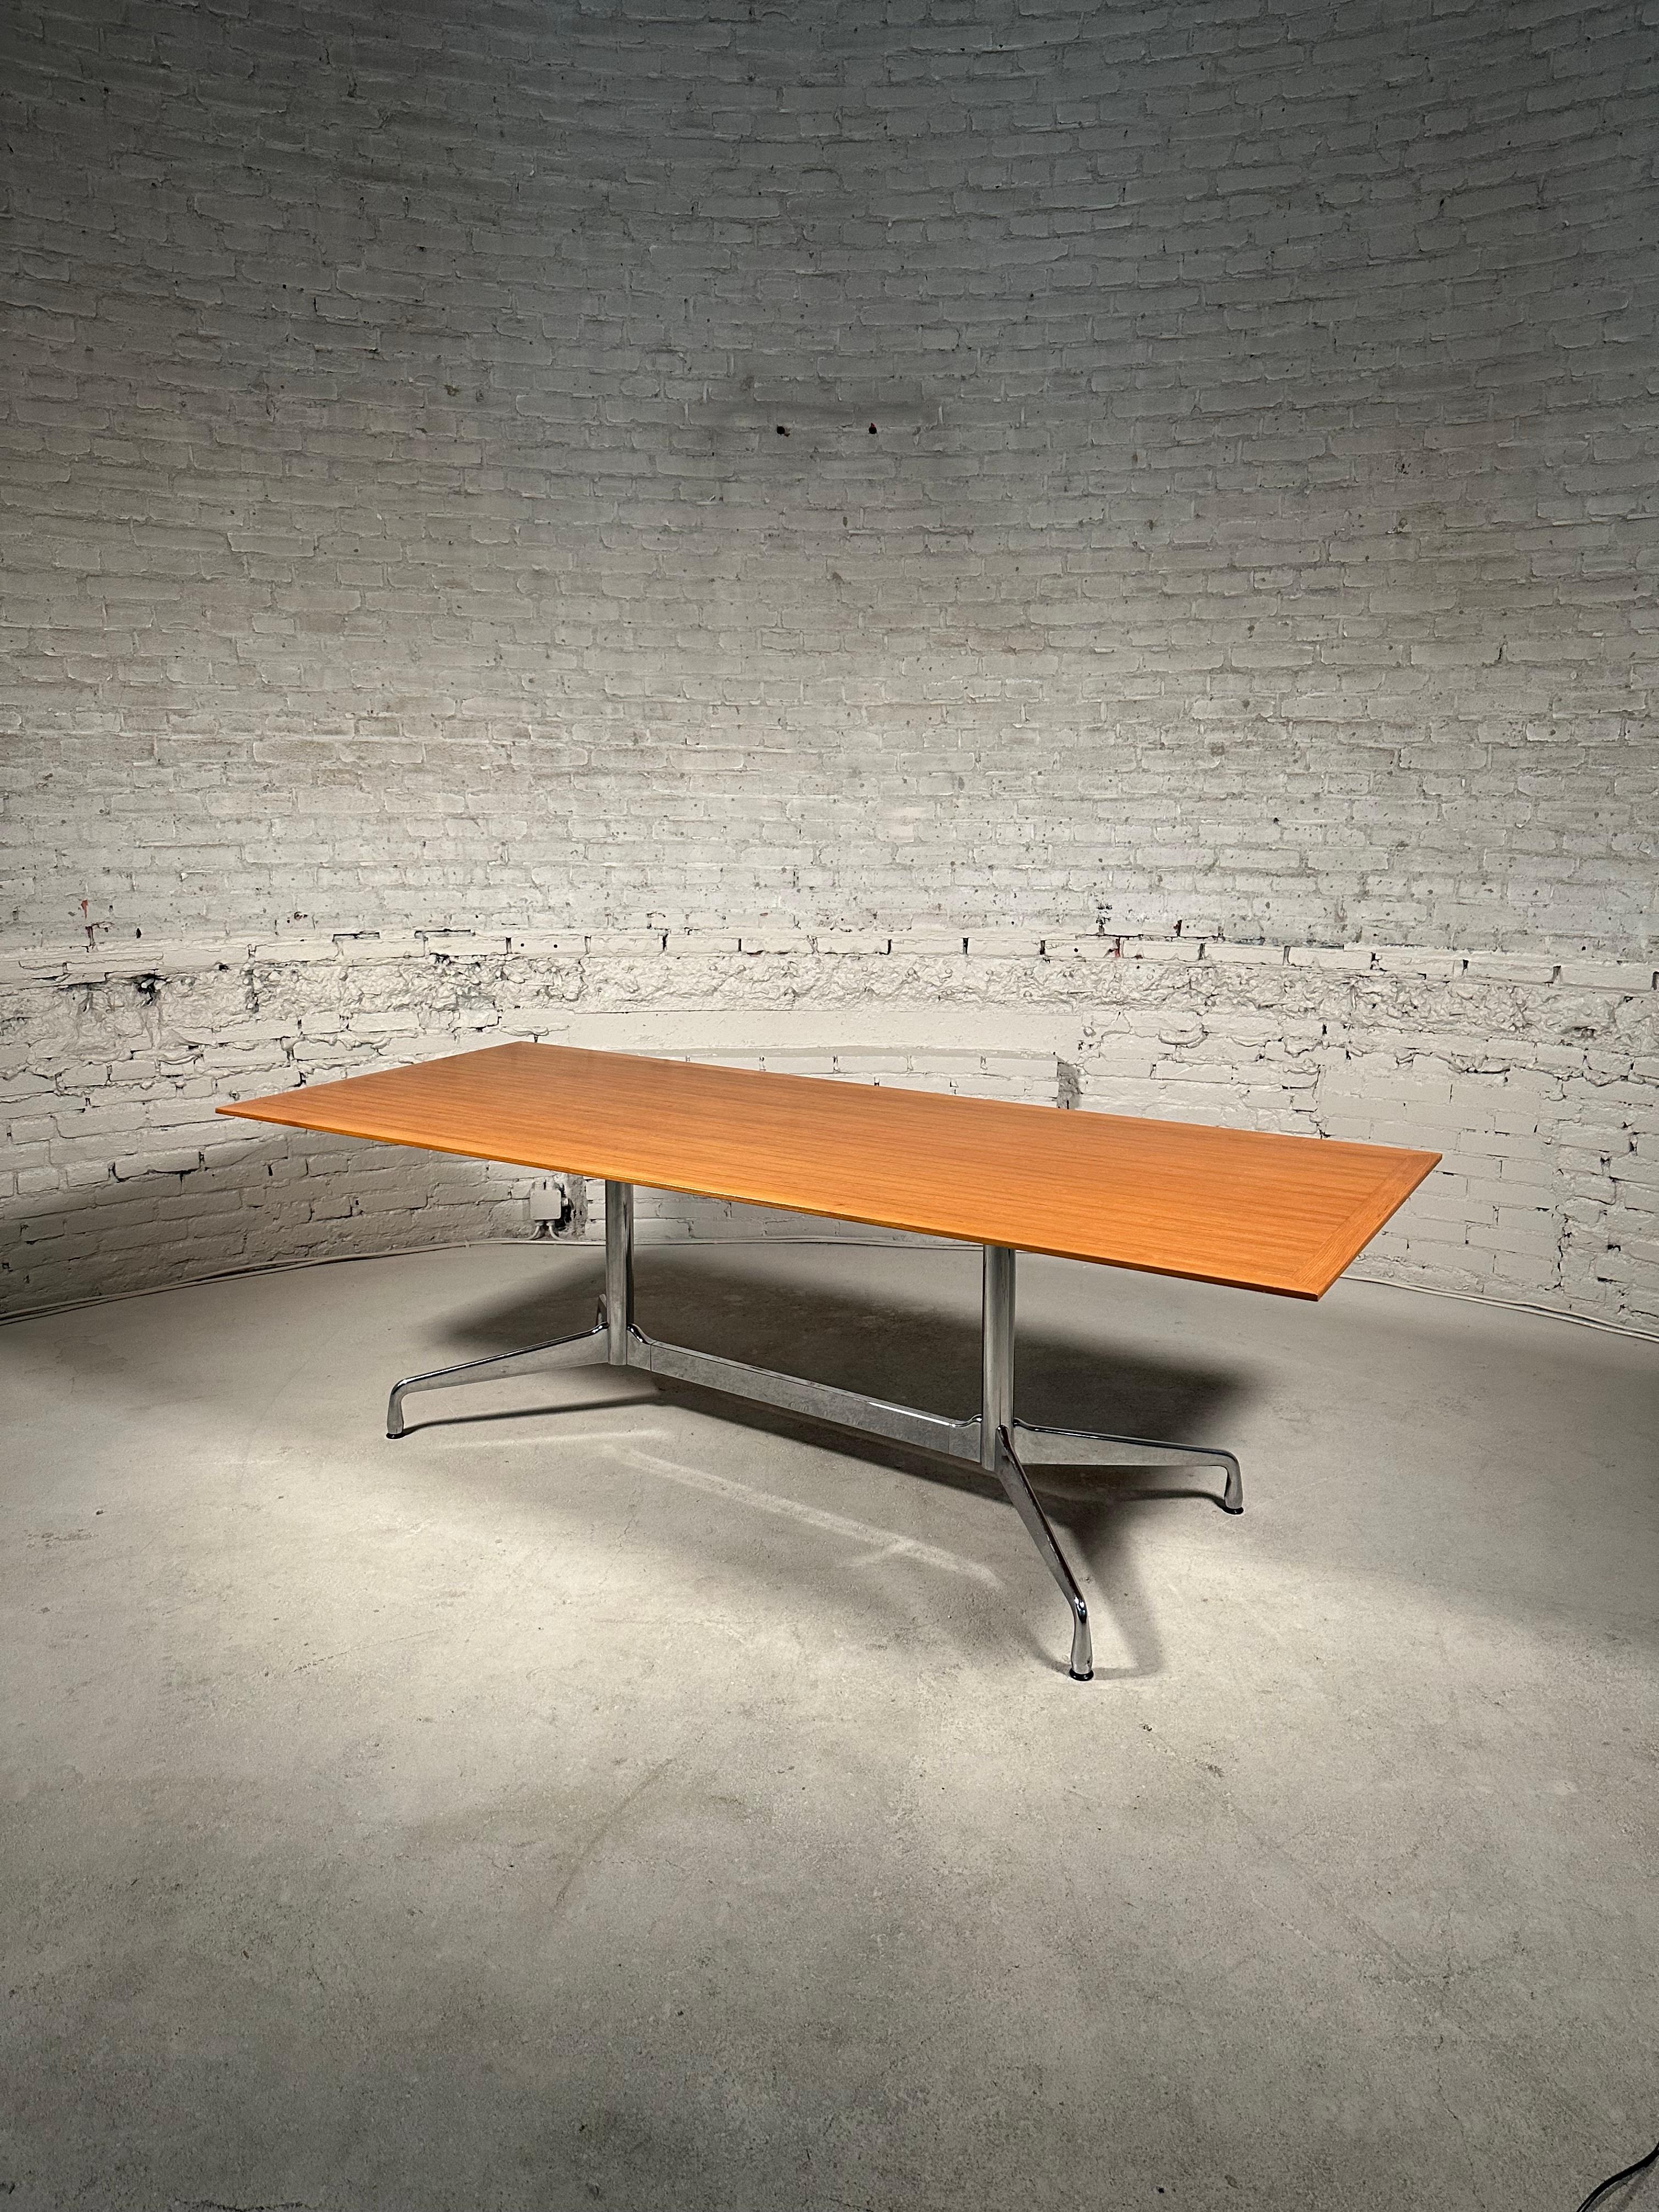 Spacieuse table de conférence Charles & Ray Eames Segmented Base fabriquée par Vitra dans les années 90. La table présente un superbe plateau en placage de hêtre assorti au livre en une seule pièce, identifiée par son étiquette de date de